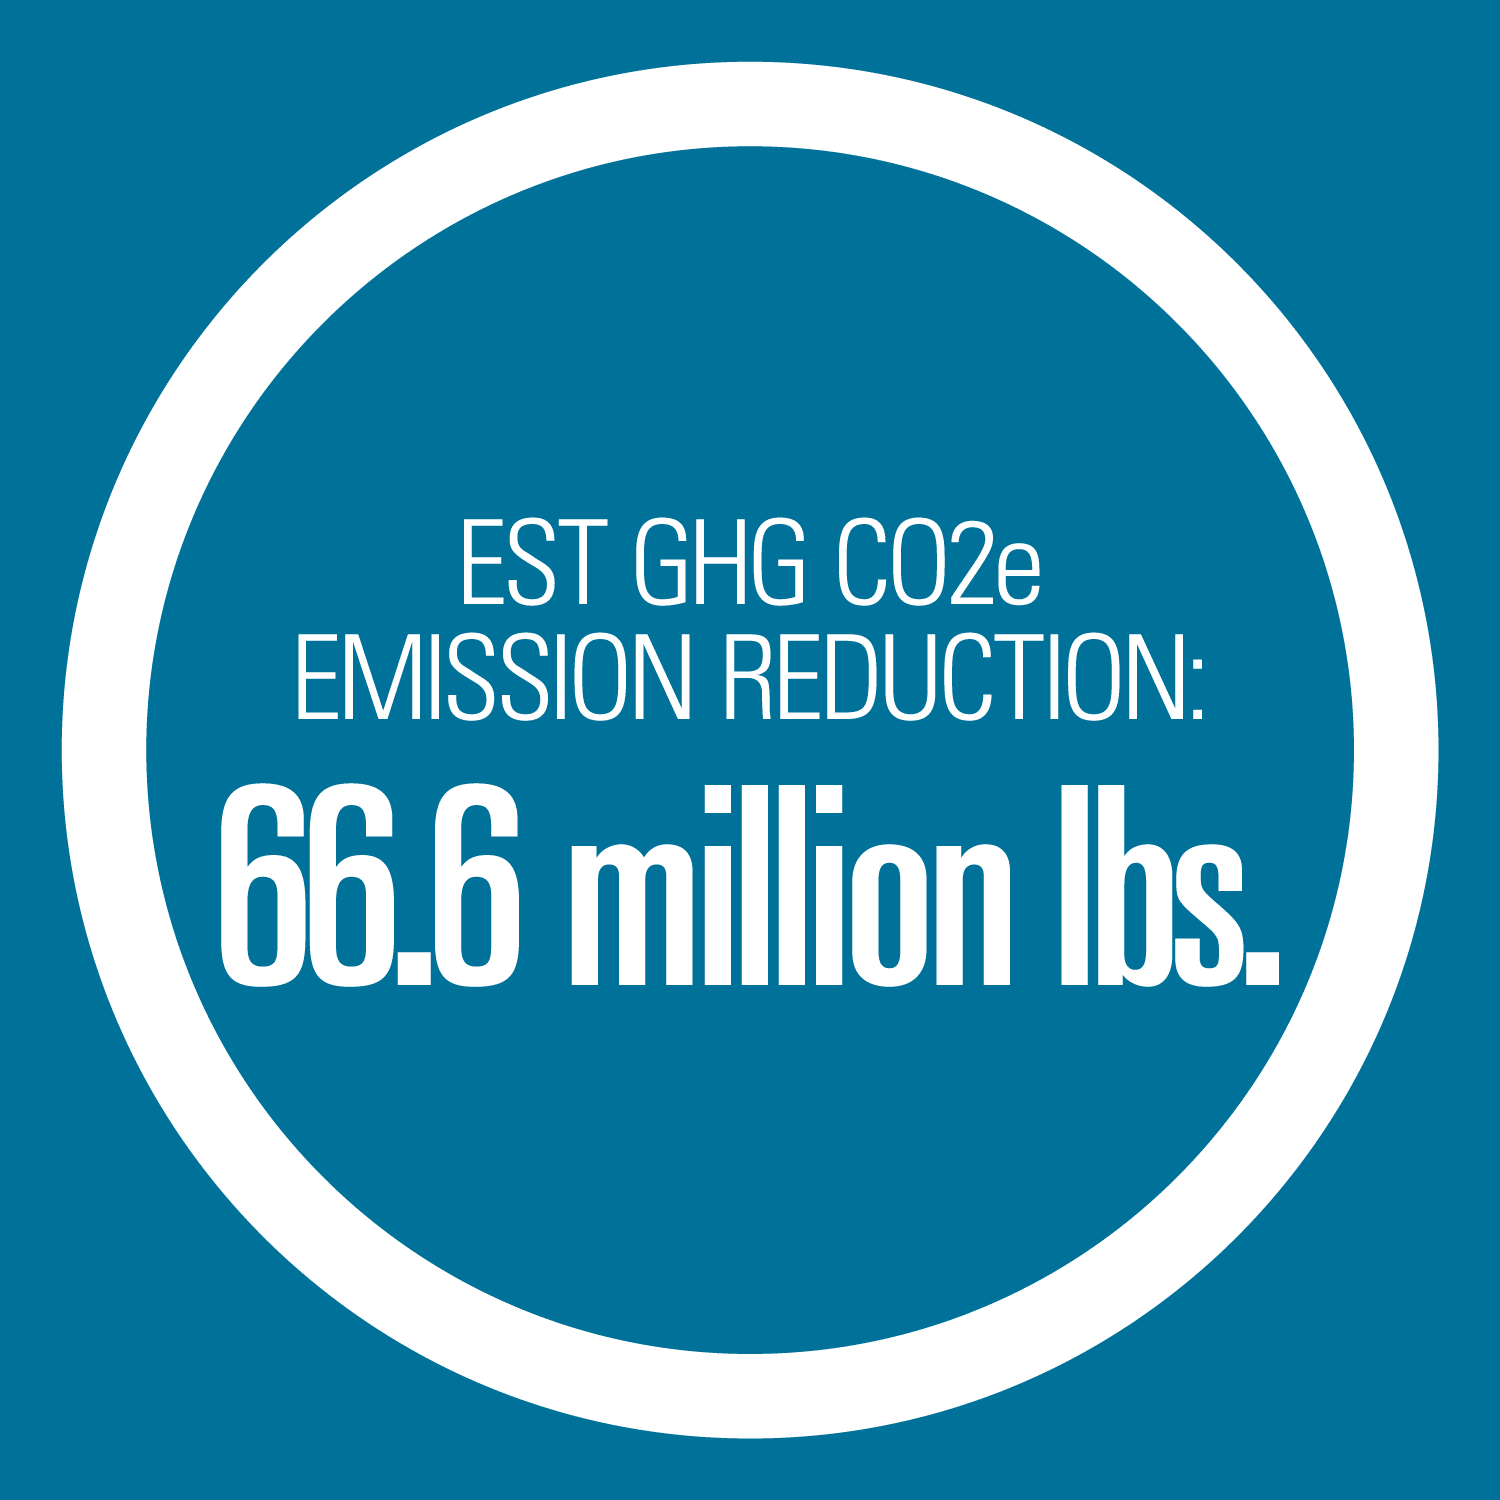 Estimated GHG CO2e Emission Reduction: 66.6 million pounds